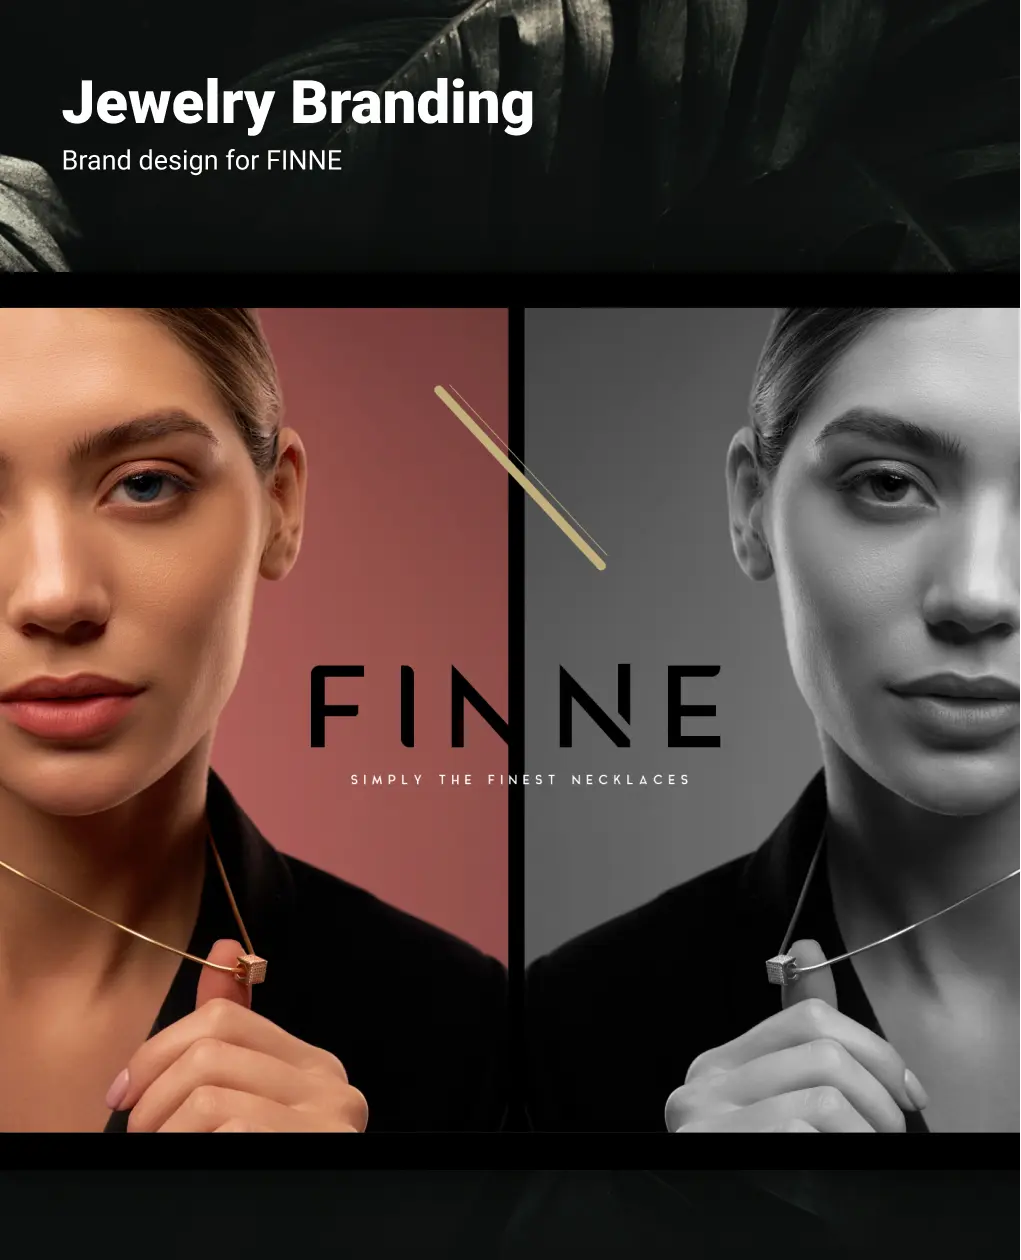 FINNE - jewelry brand design - Creatif Agency